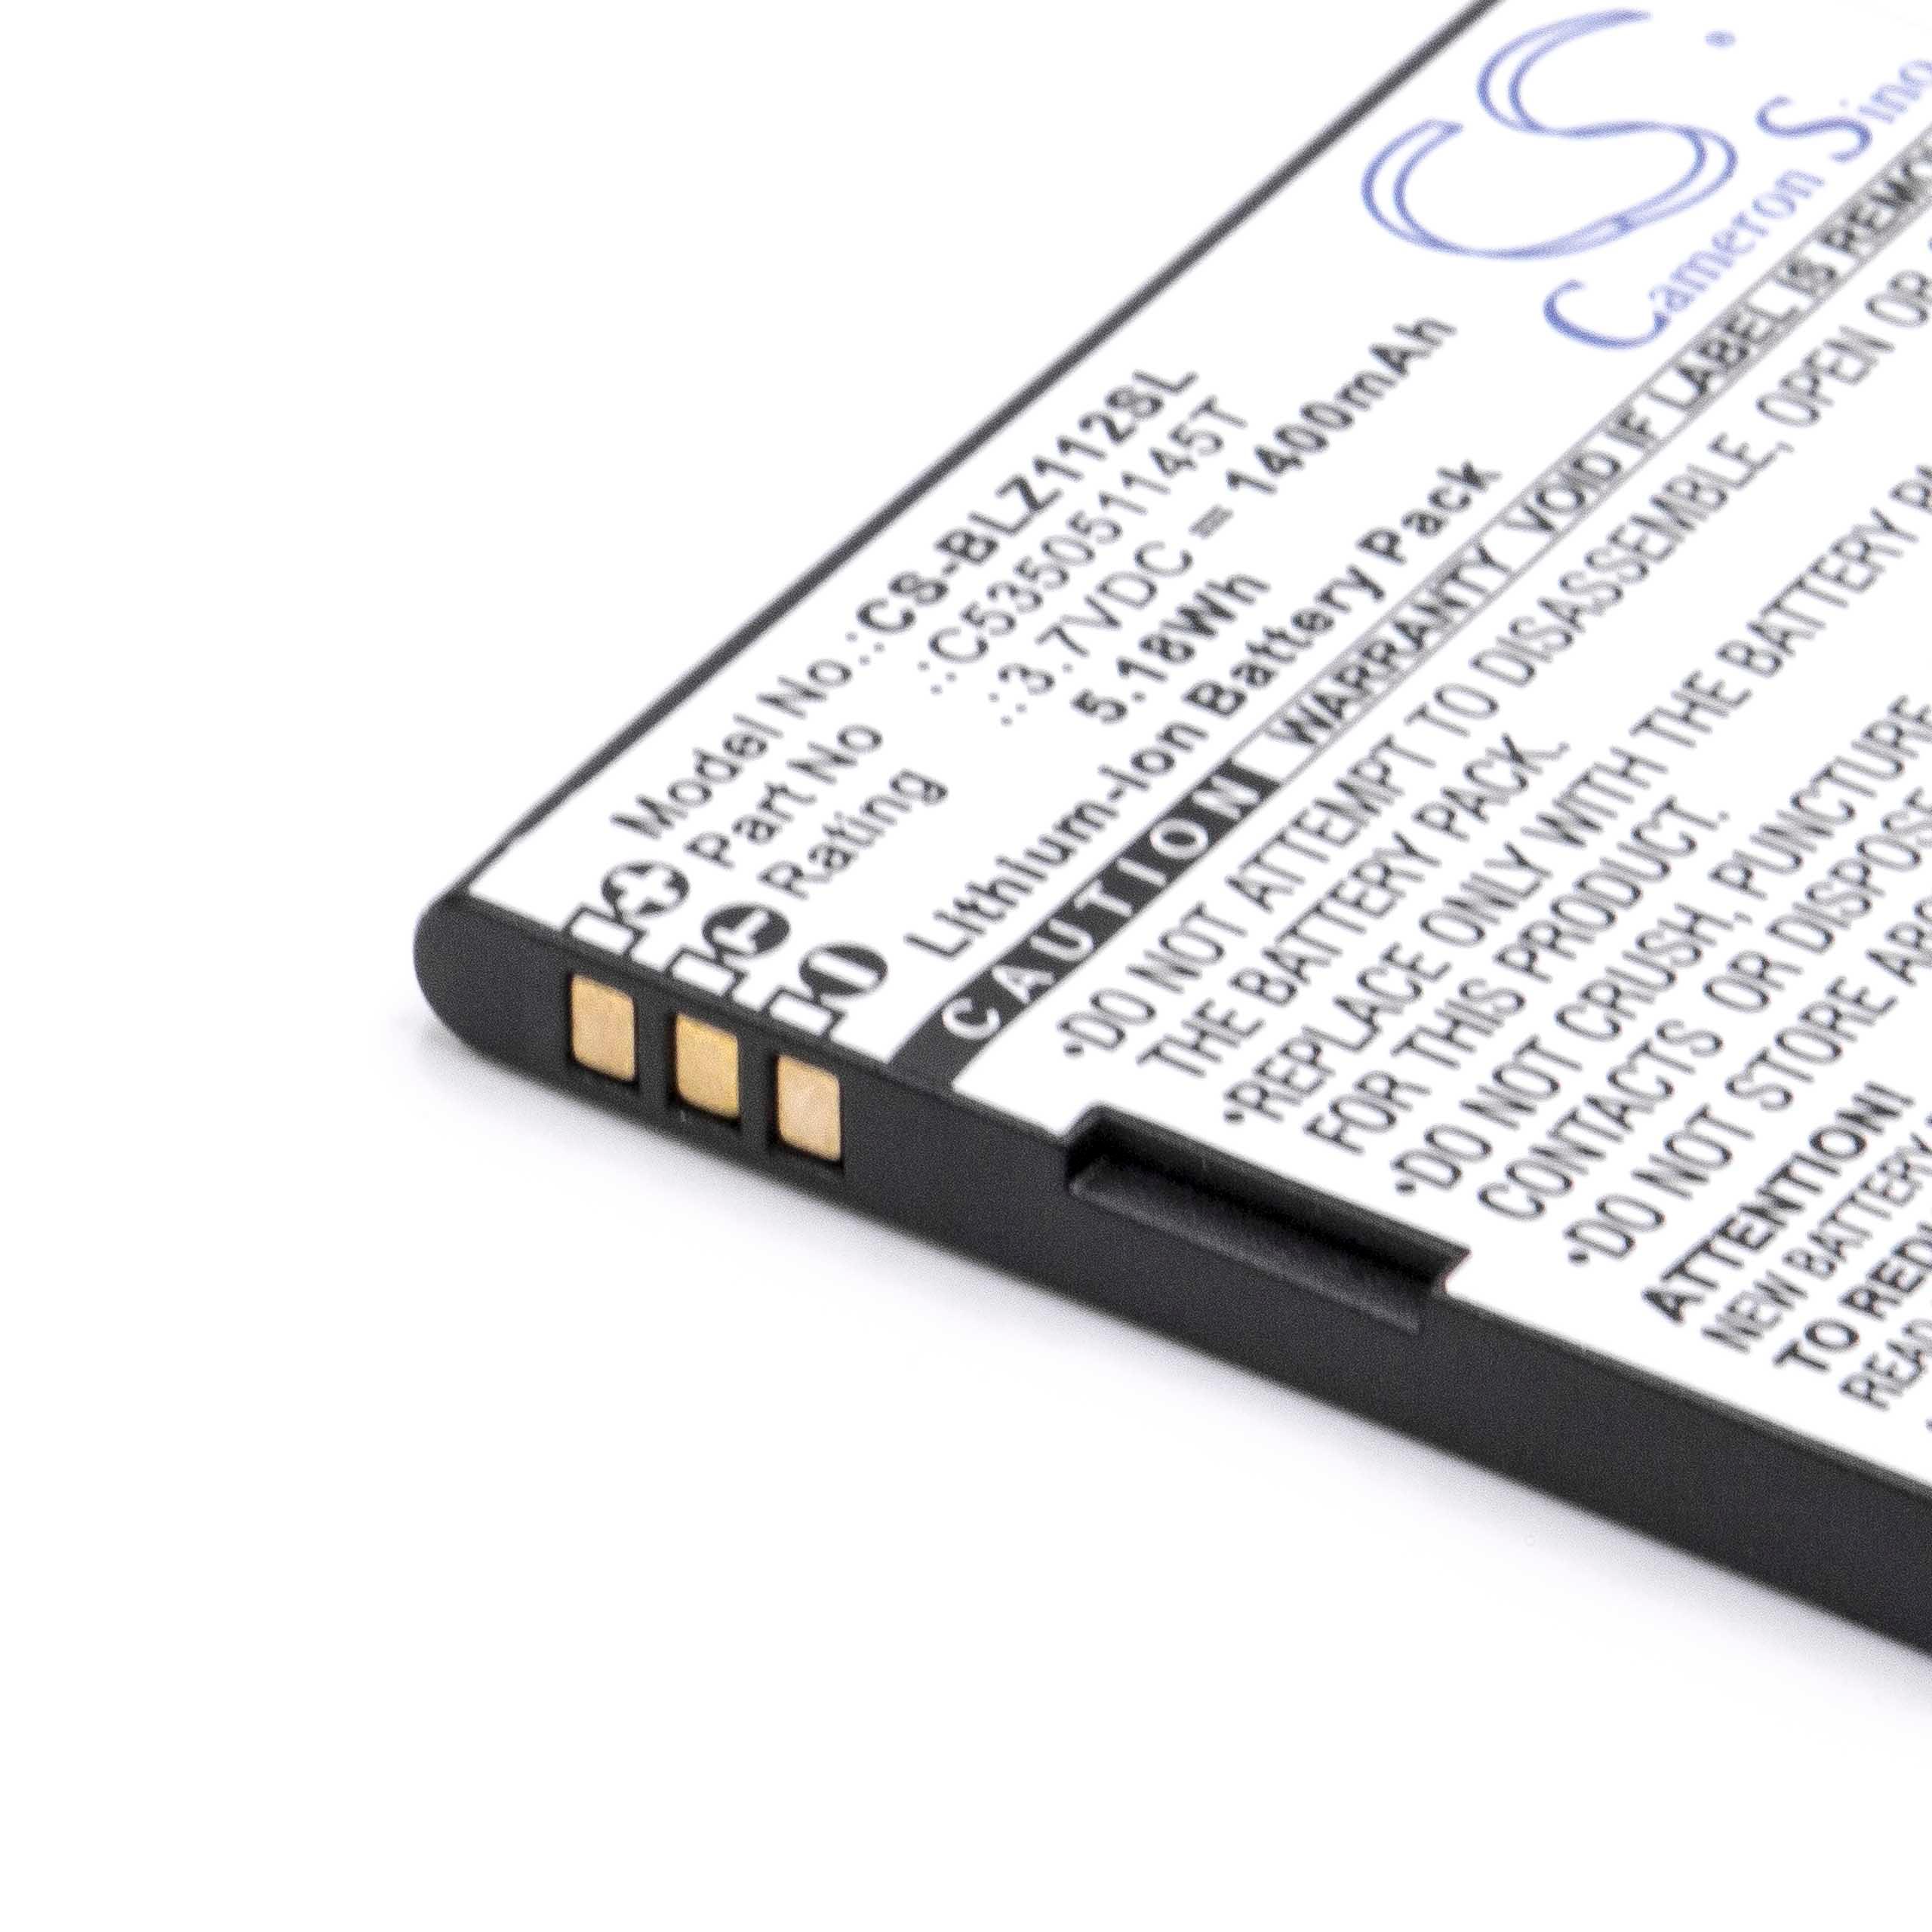 Batterie remplace Blu C535051145T pour téléphone portable - 1400mAh, 3,7V, Li-ion